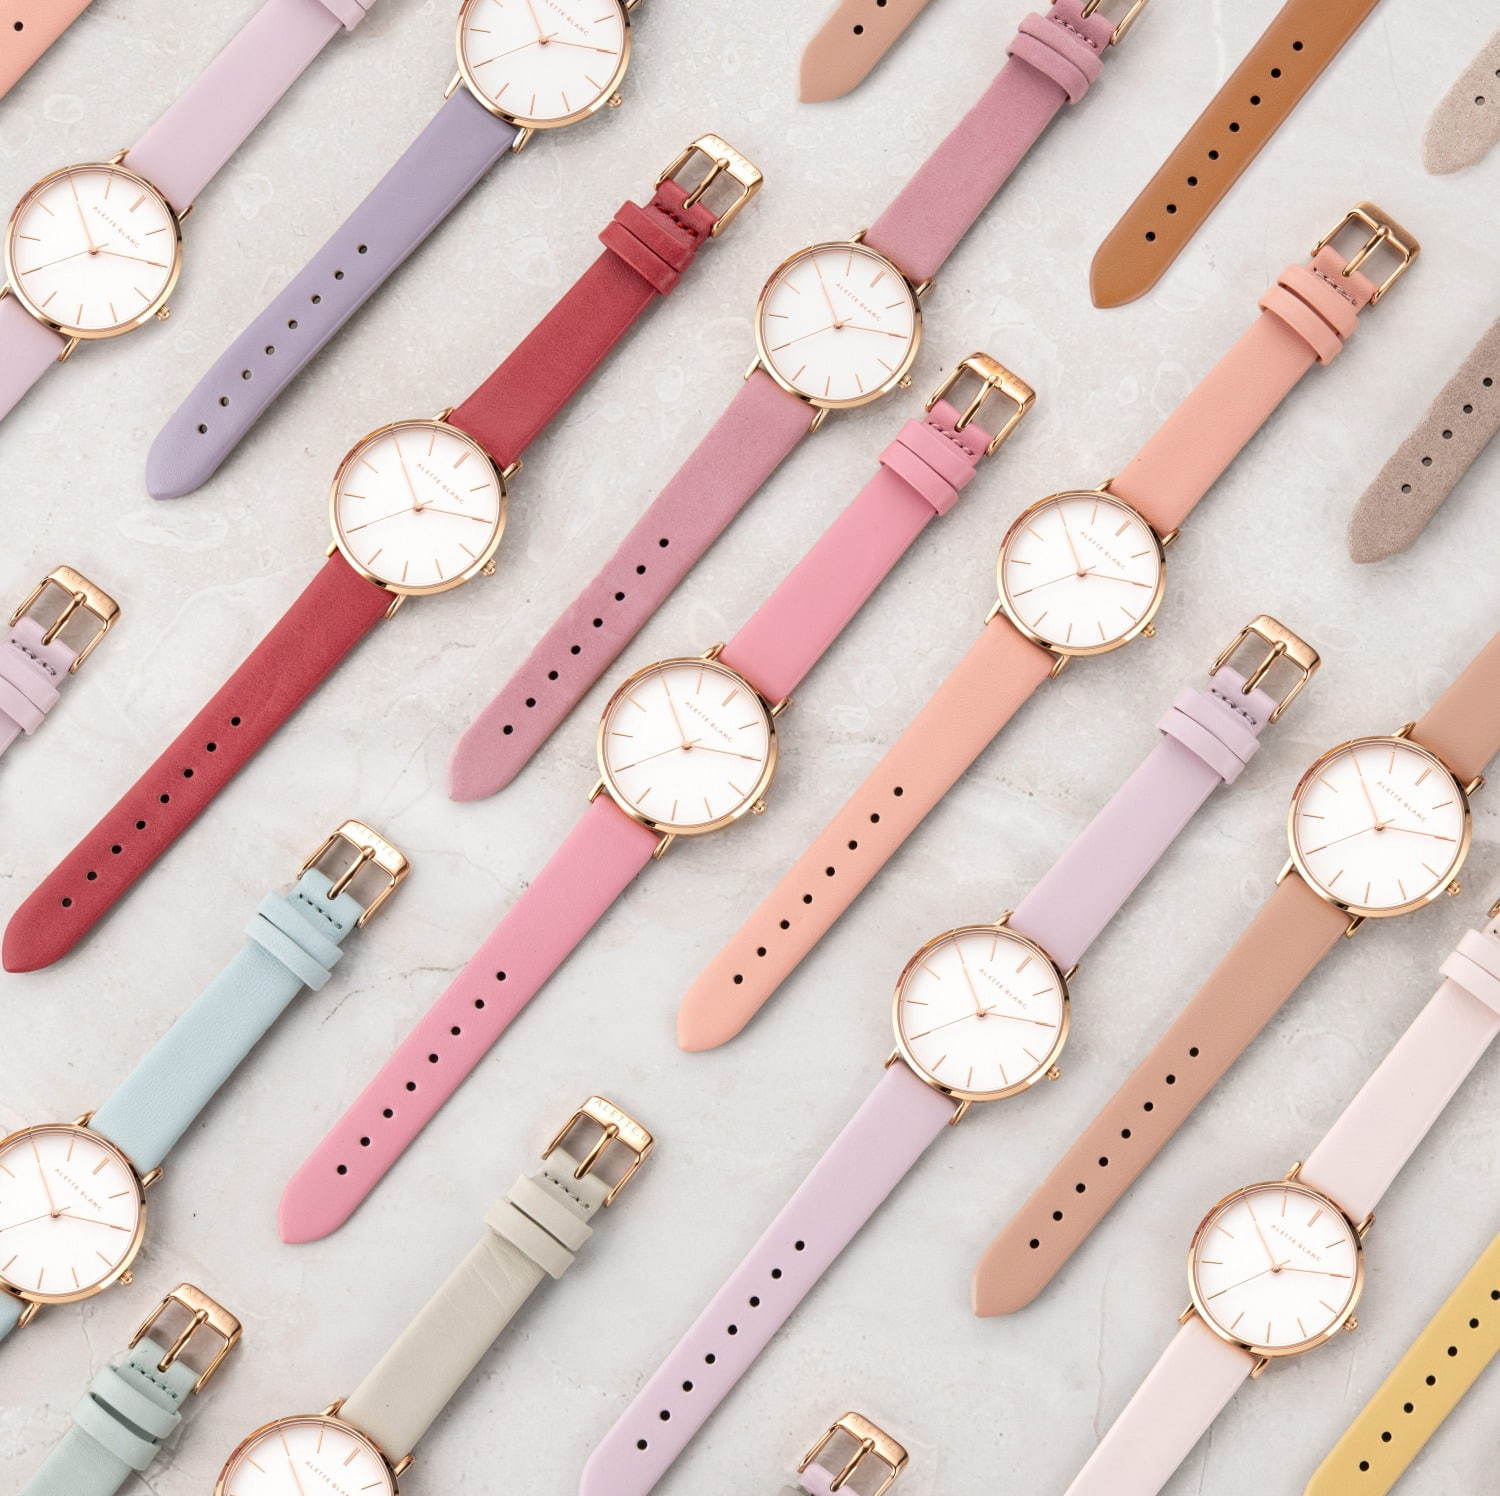 アレットブラン“33色”から選べる腕時計「パレットコレクション」ローズ